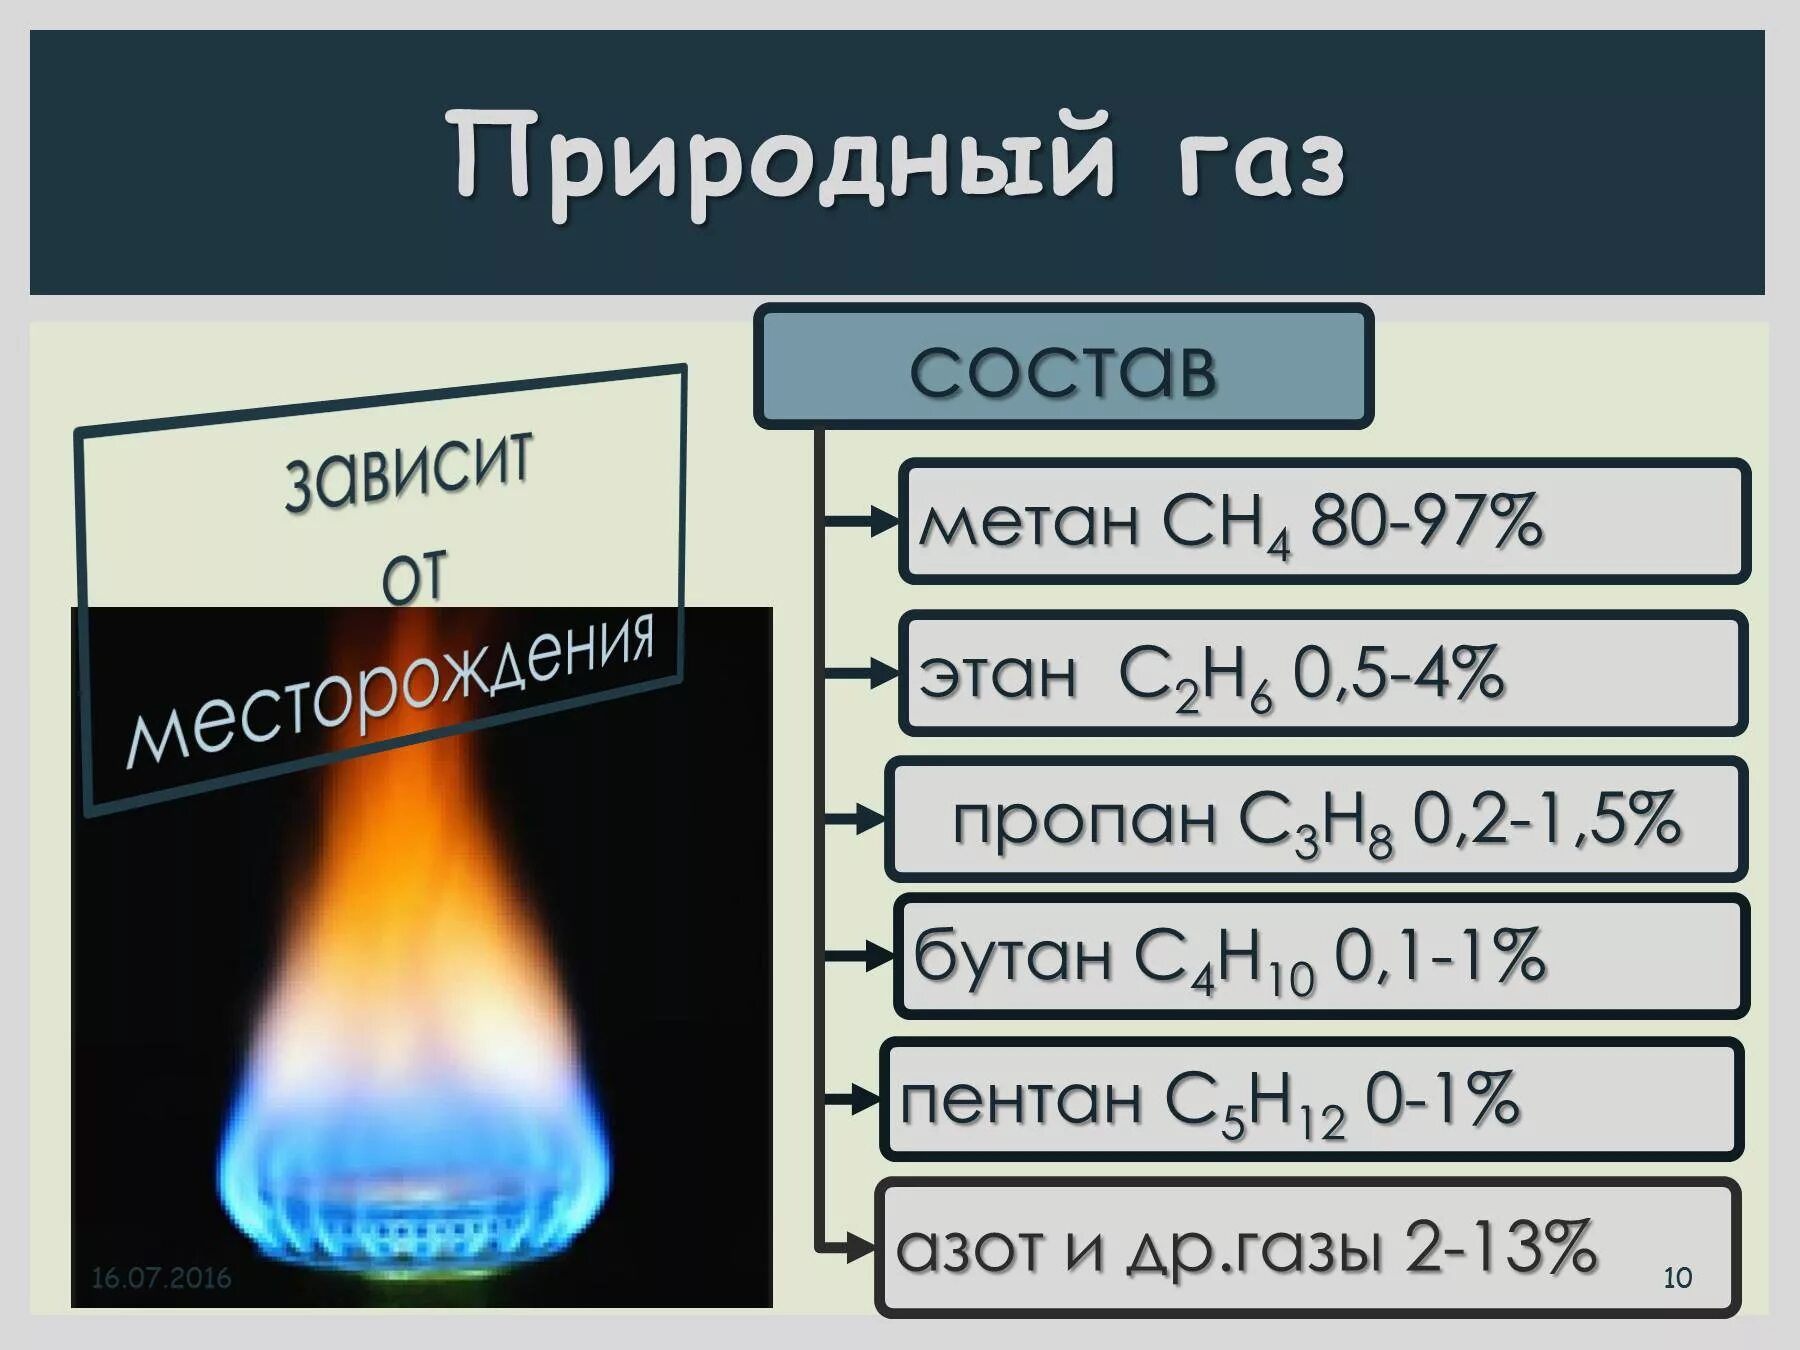 Со горючий газ. Состав смеси природного газа. Природный ГАЗ состав. Состав природного газа метан. Из чего состоит природный ГАЗ.